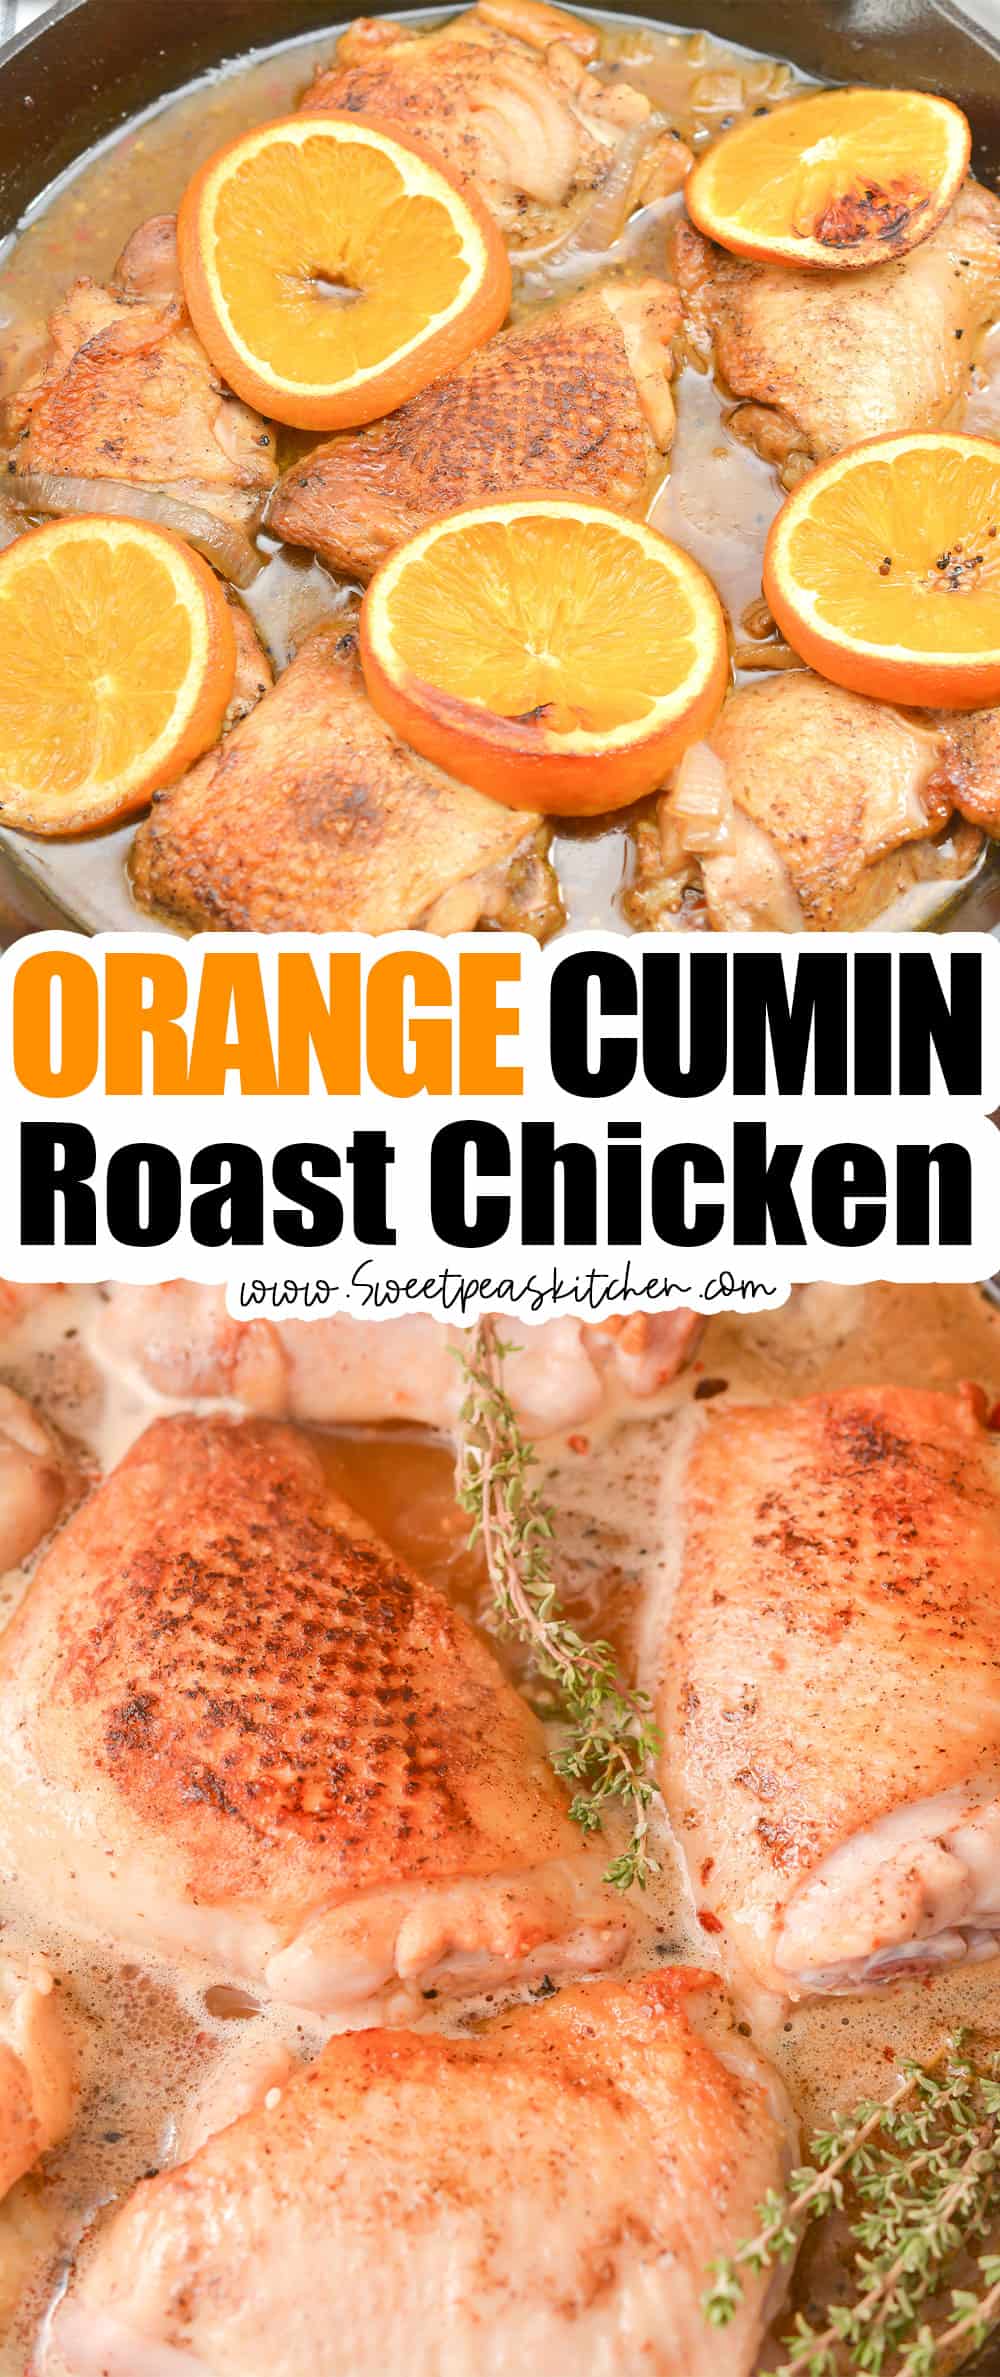 Orange Cumin Roast Chicken